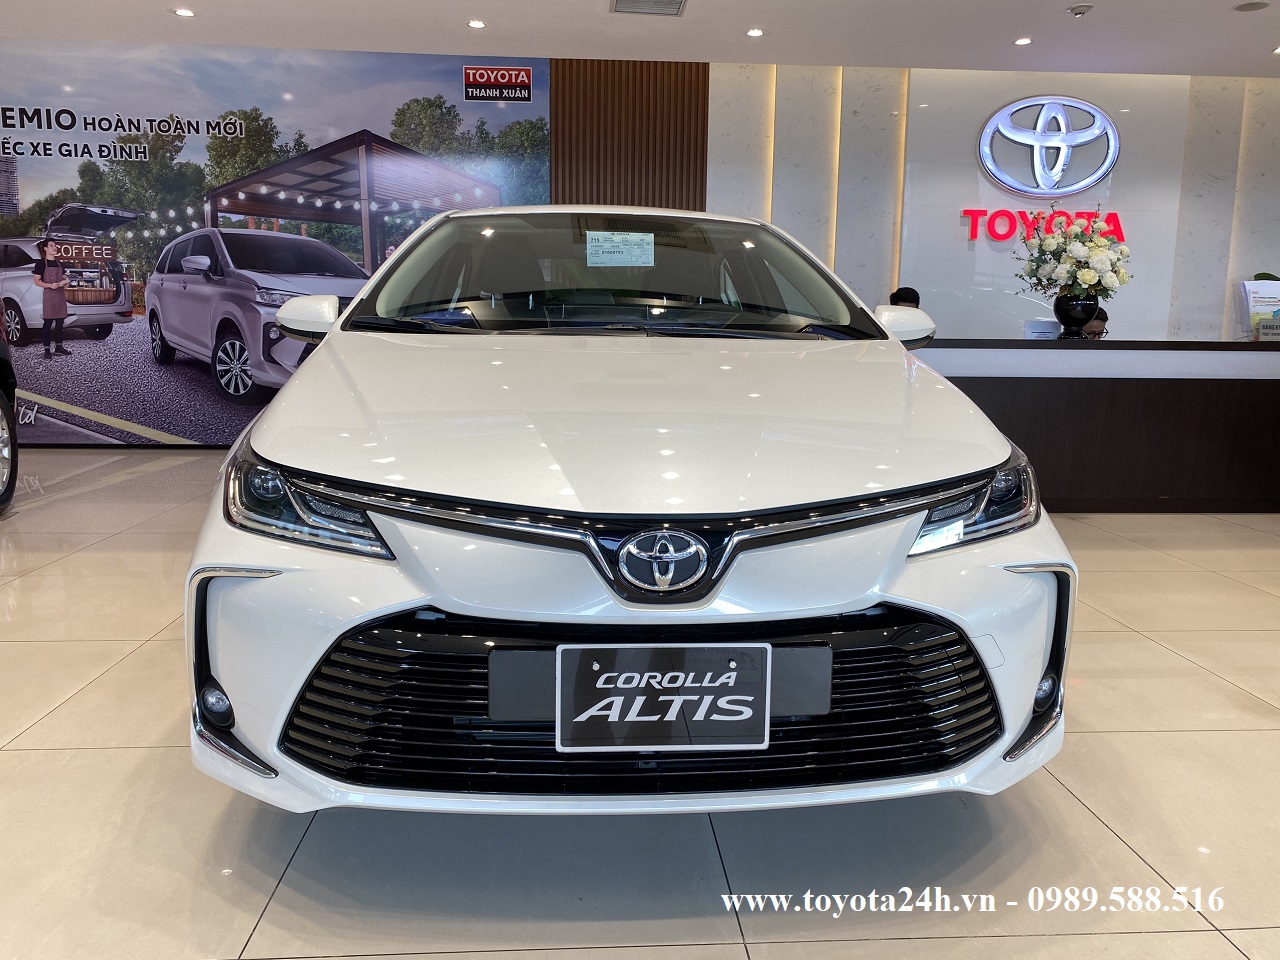 Toyota Corolla Altis 1.8G 2022 Màu Trắng Ngọc Trai Hình Ảnh Bảng ...